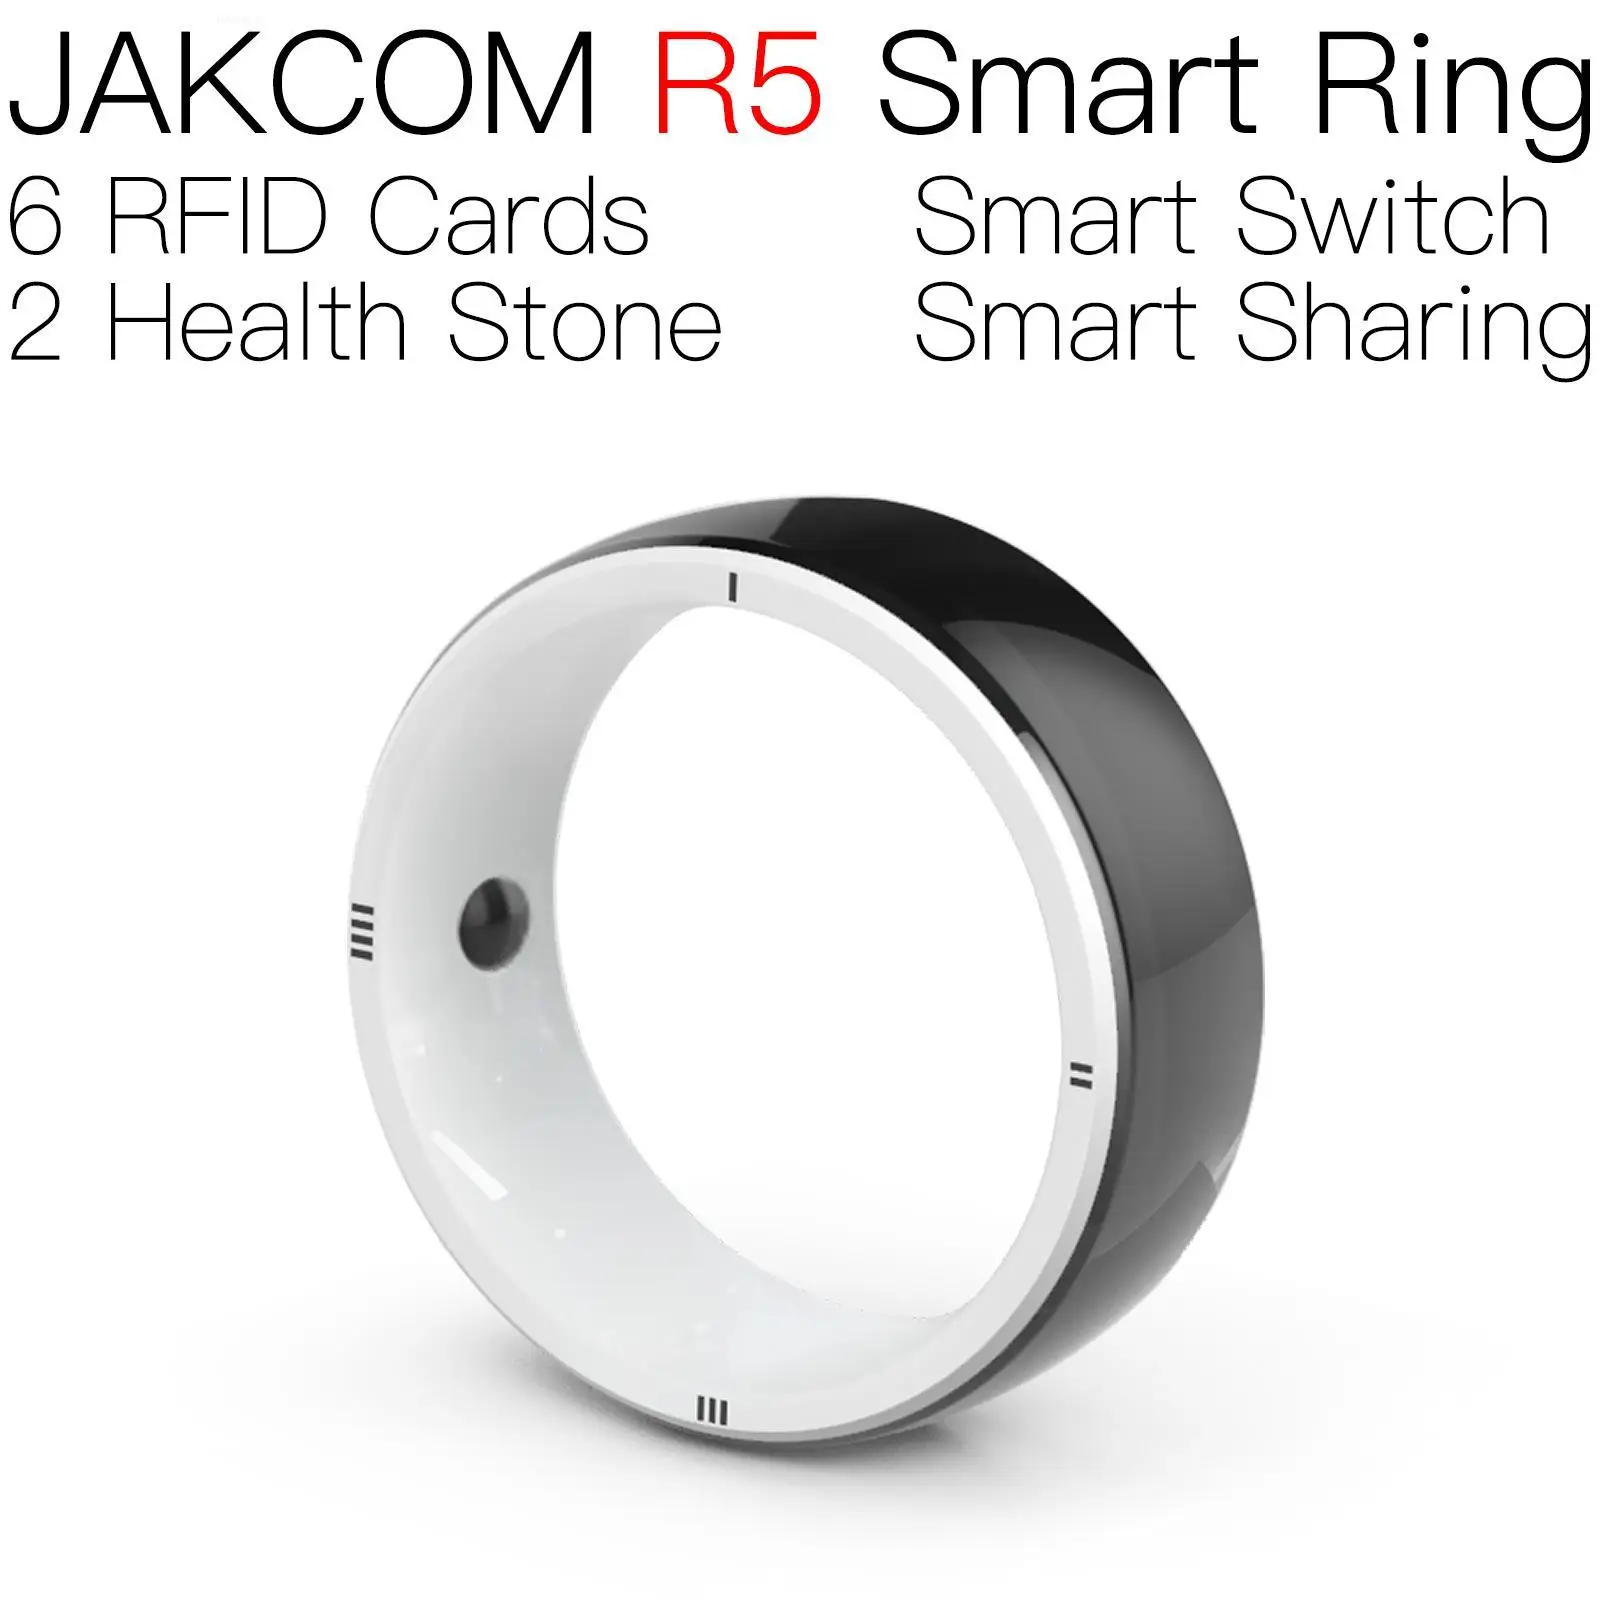 

JAKCOM R5 Smart Ring better than rfid card sticker 1000 reader portable monster hunter original carte amiboo crossing dom nfc